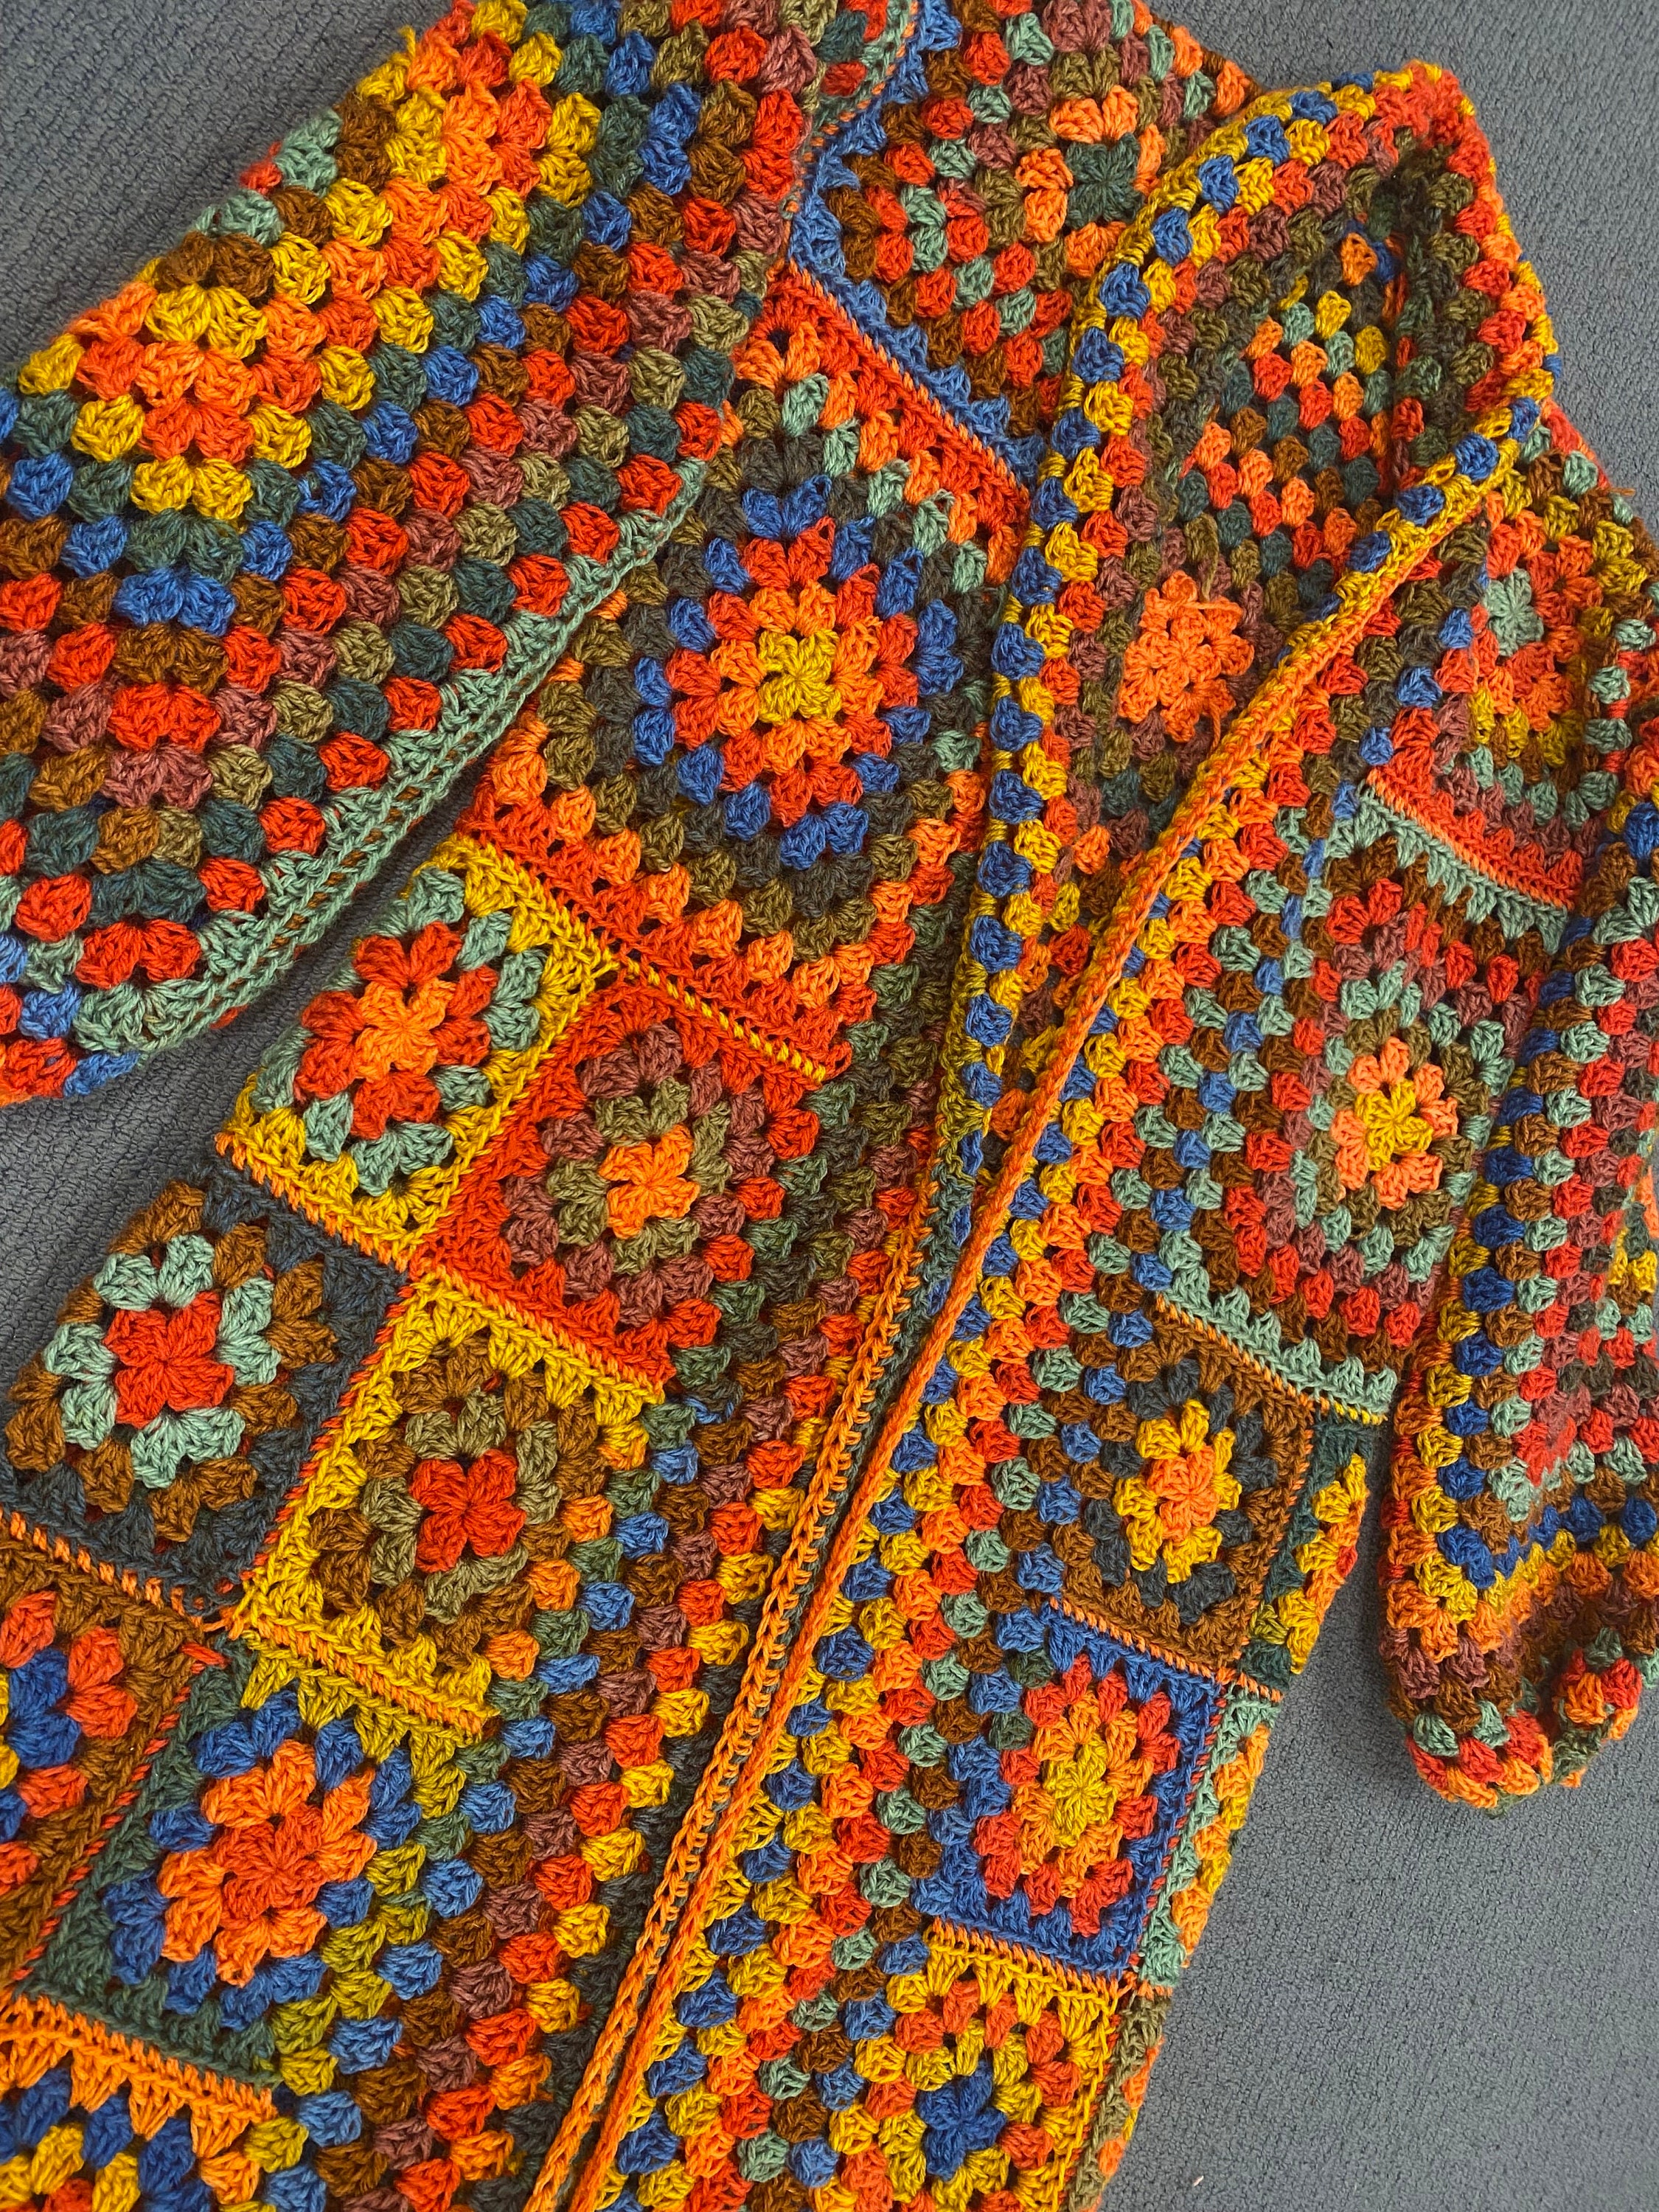 Granny Square Cardigan a la Chloë Crochet Kit 1 Black XS/S 